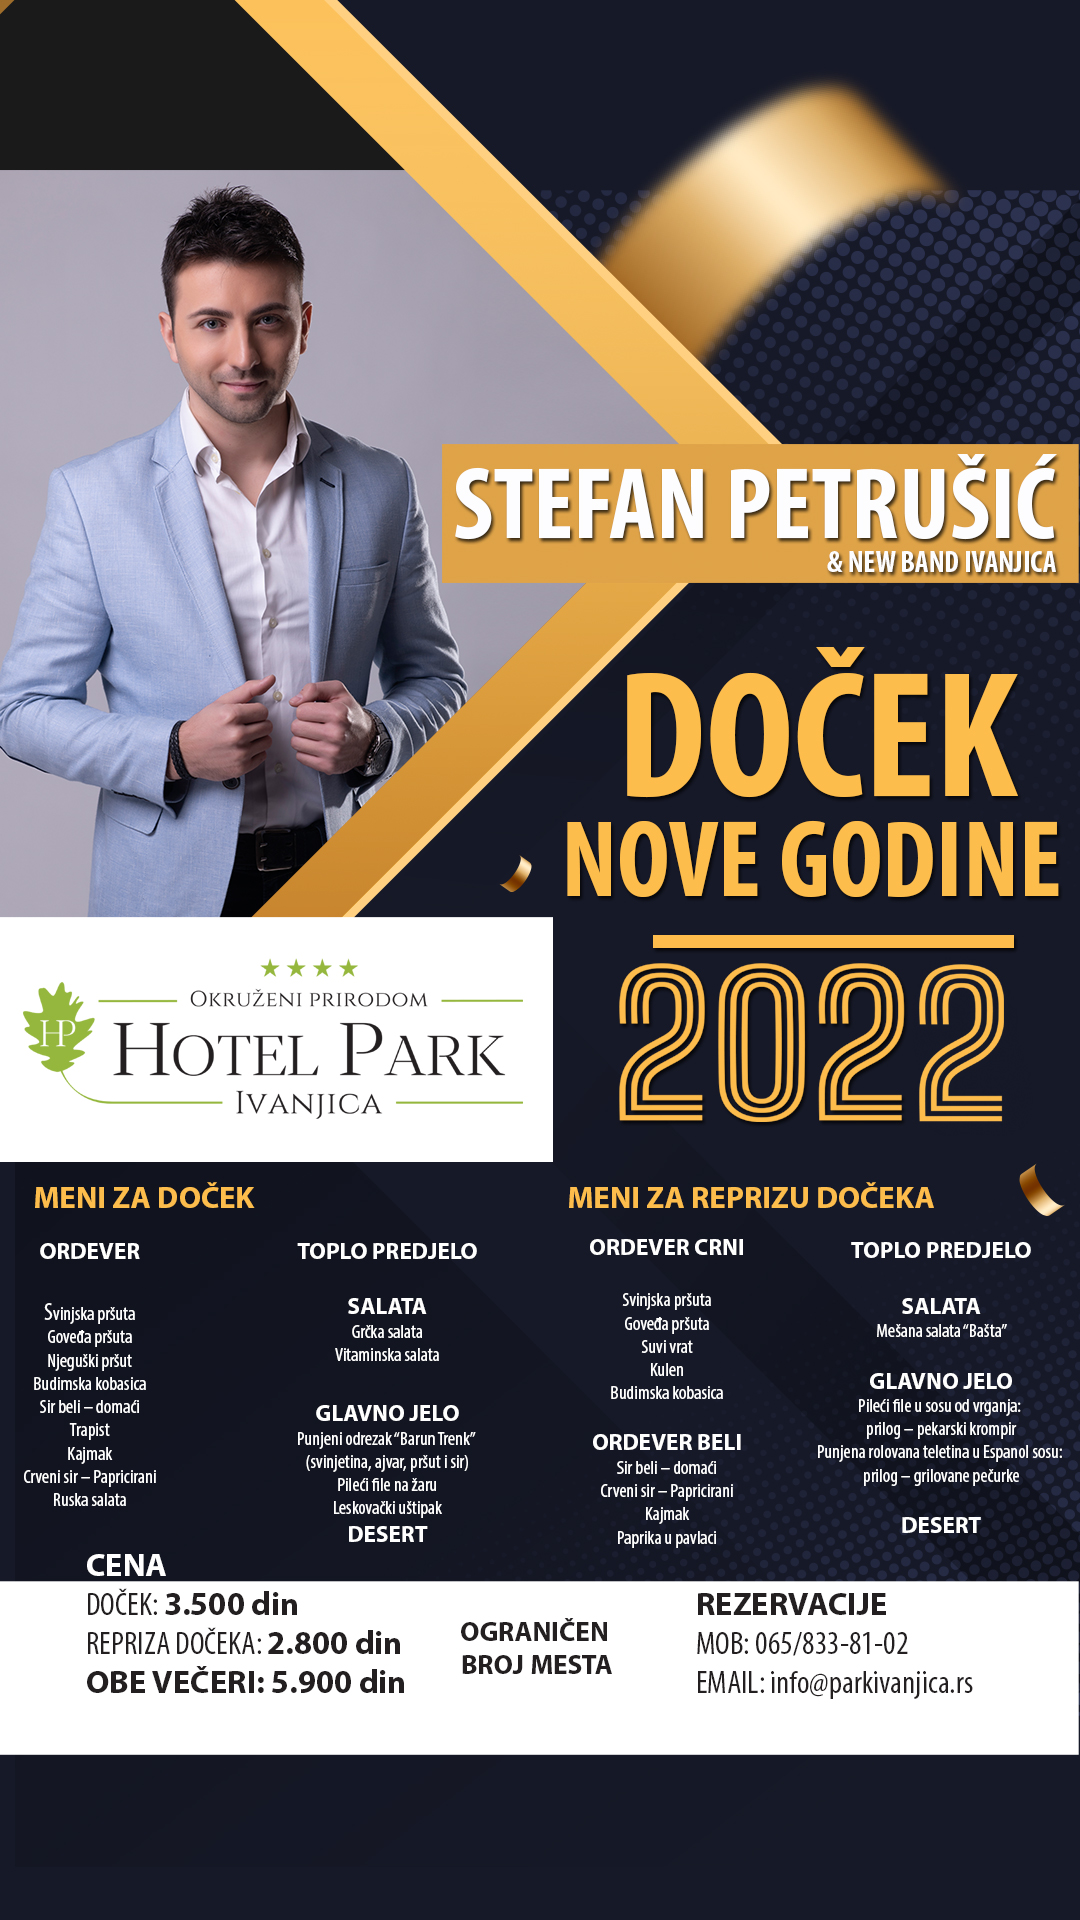 novag-plakat-social-story Dočekajte najluđu noć u hotelu "Park" uz Stefana Petrušića (VIDEO)